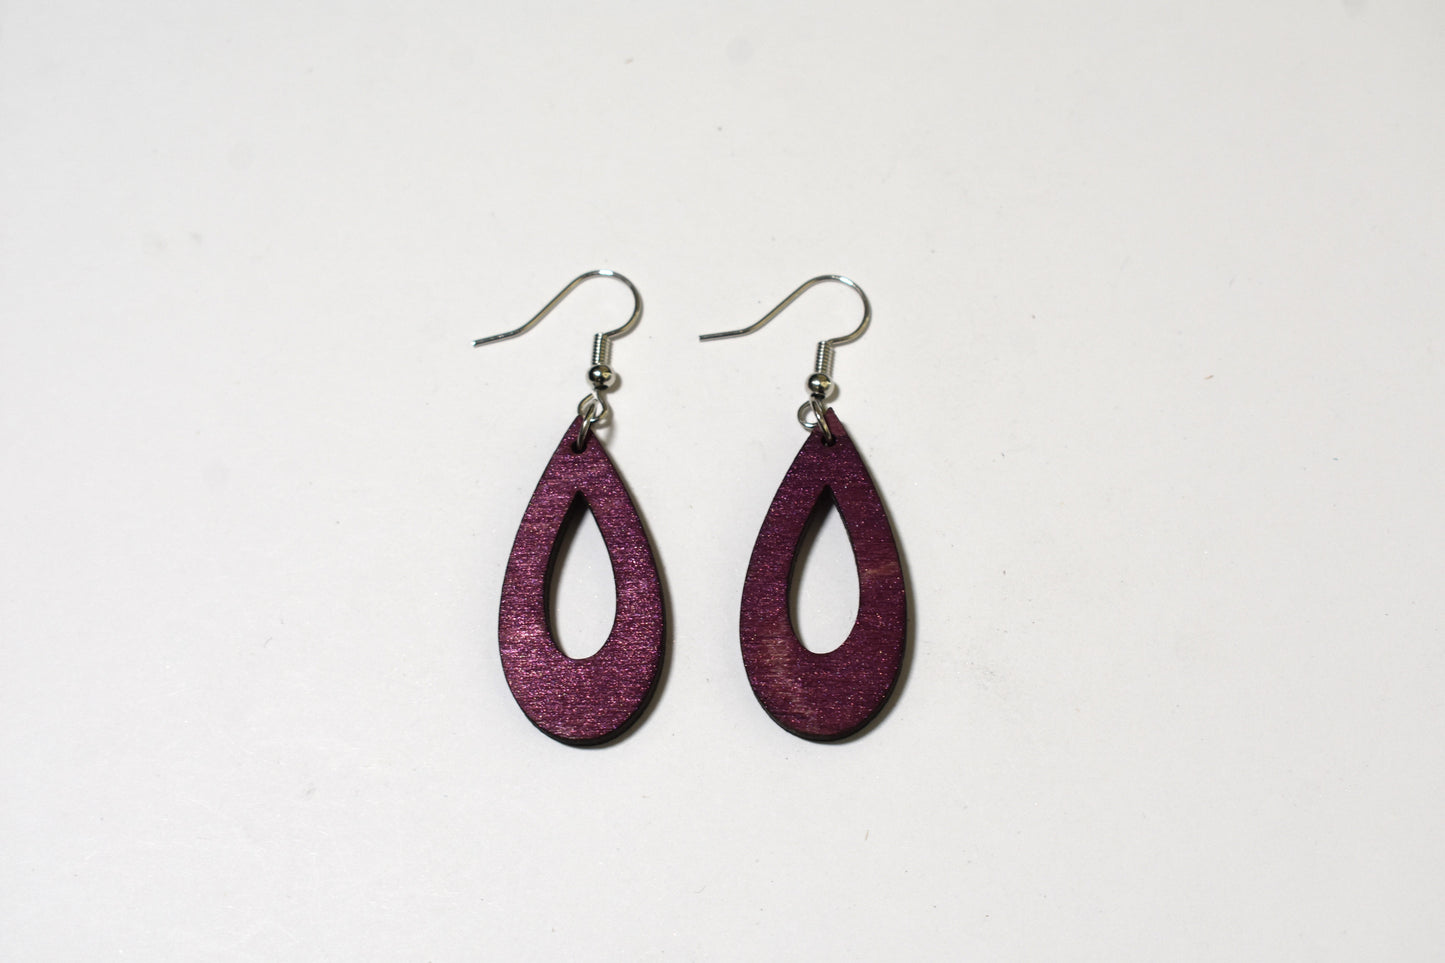 Eggplant purple teardrop earrings - Creative Designs By Kari